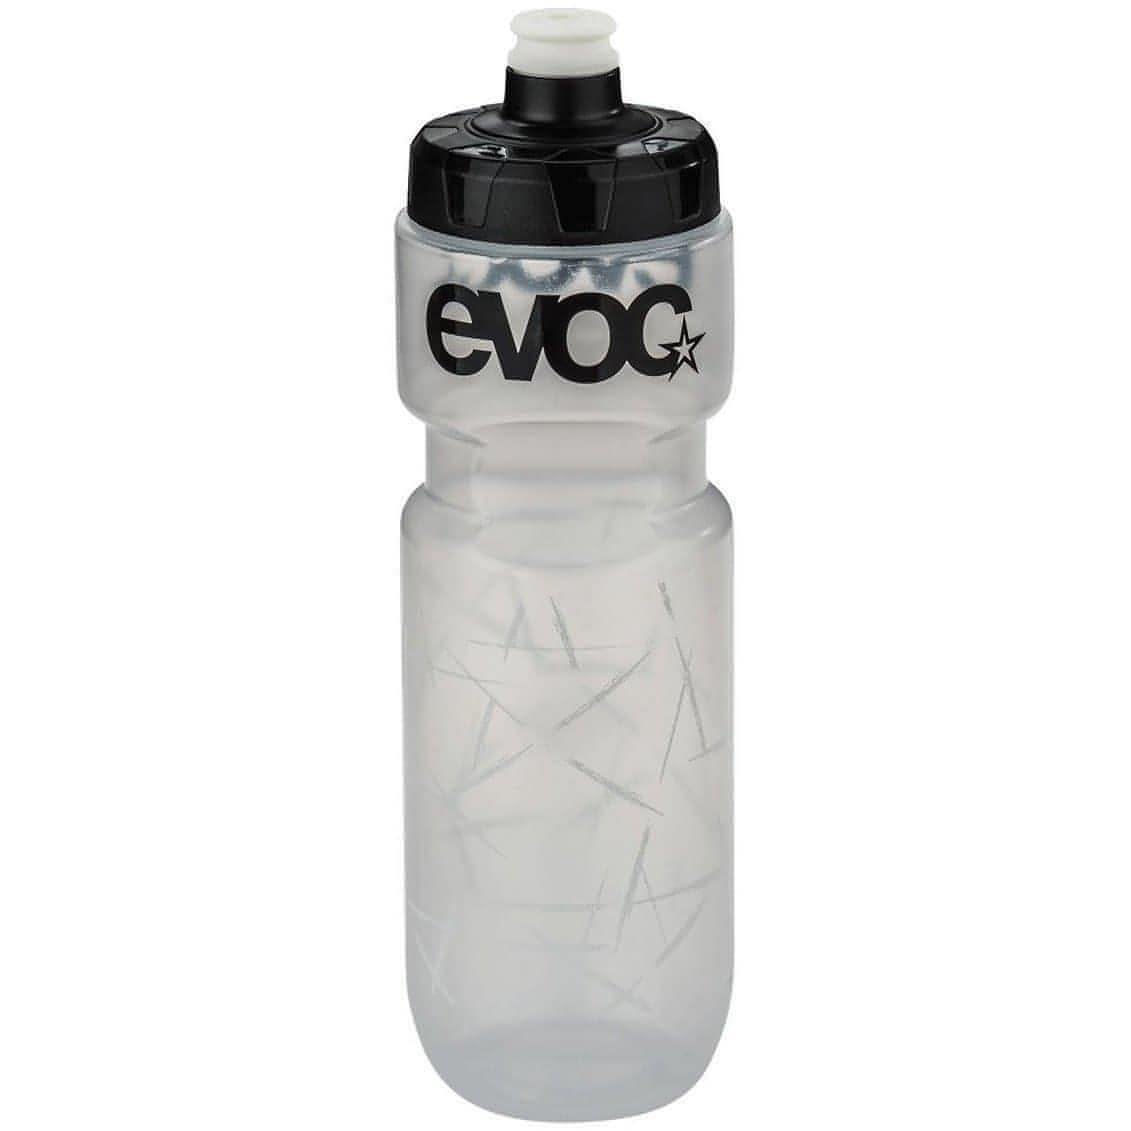 Evoc 750ml Water Bottle - White 4250450720973 - Start Fitness